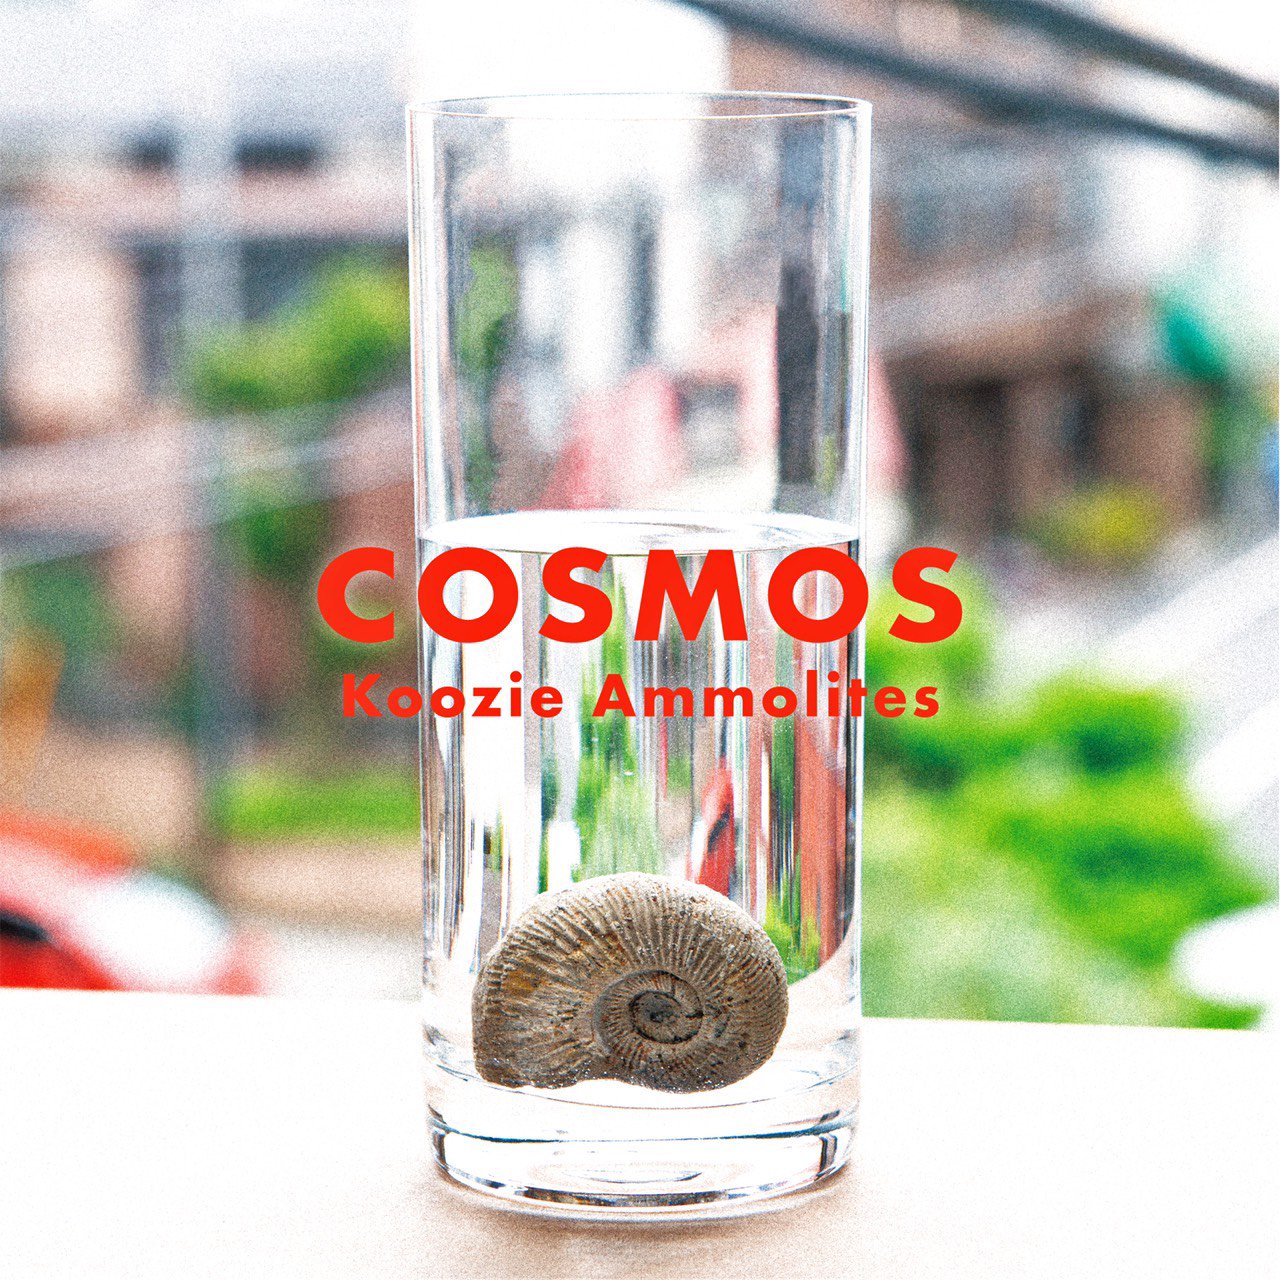 【COSMOS】Koozie Ammolites(クージーアンモライツ)(9/26発売)